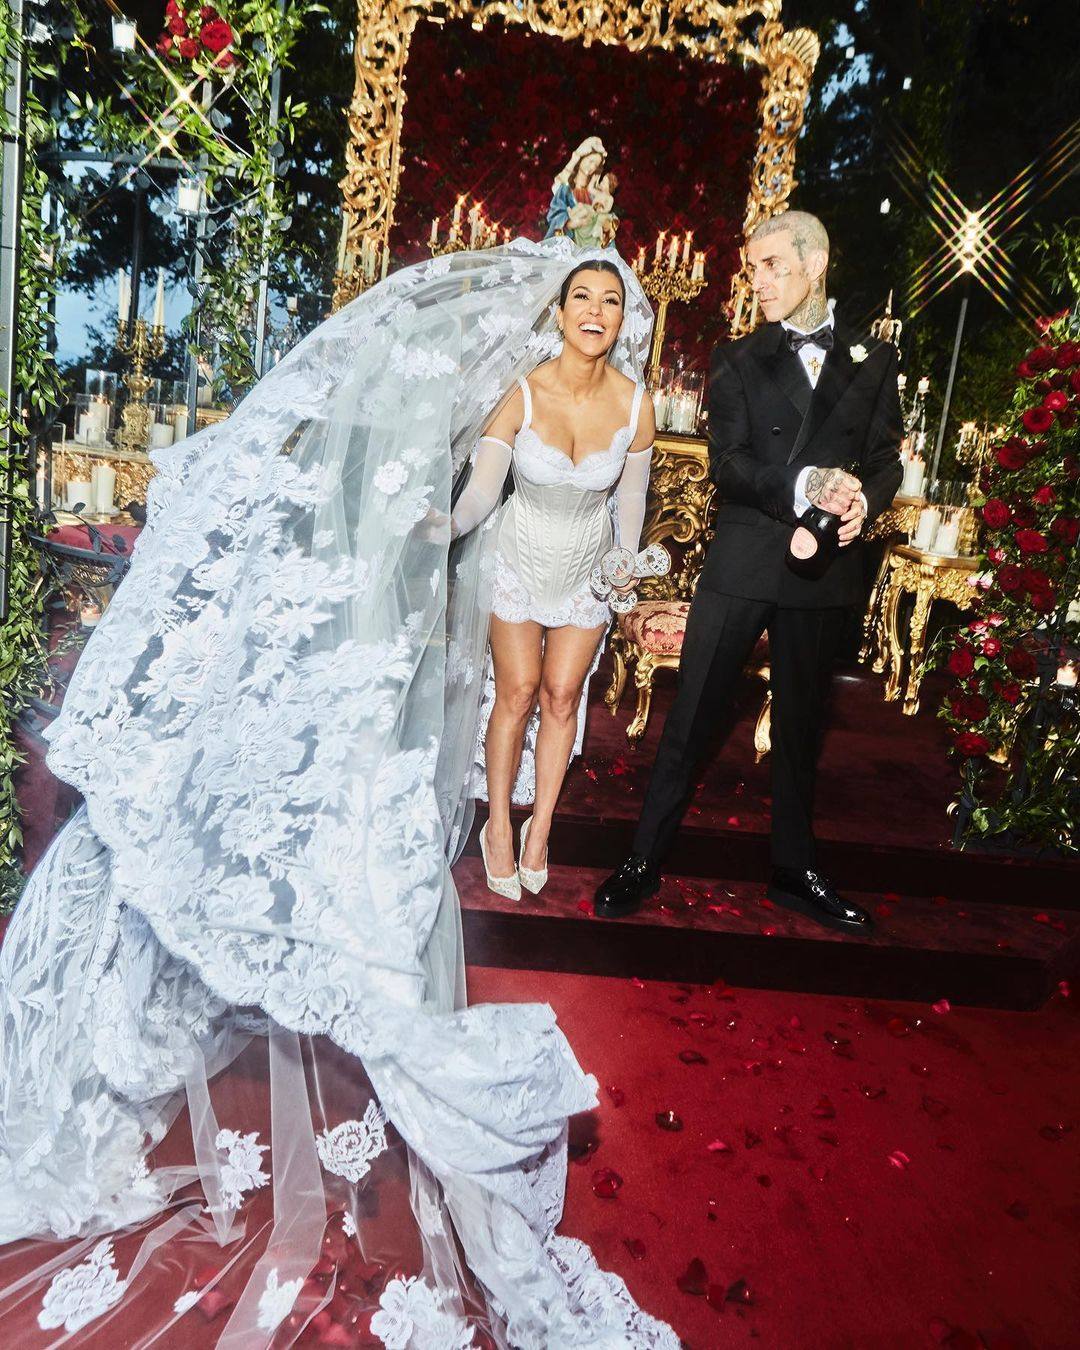 Kourtney Kardashian and Travis Barker at their third wedding. Photo: @kourtneykardash/Instagram